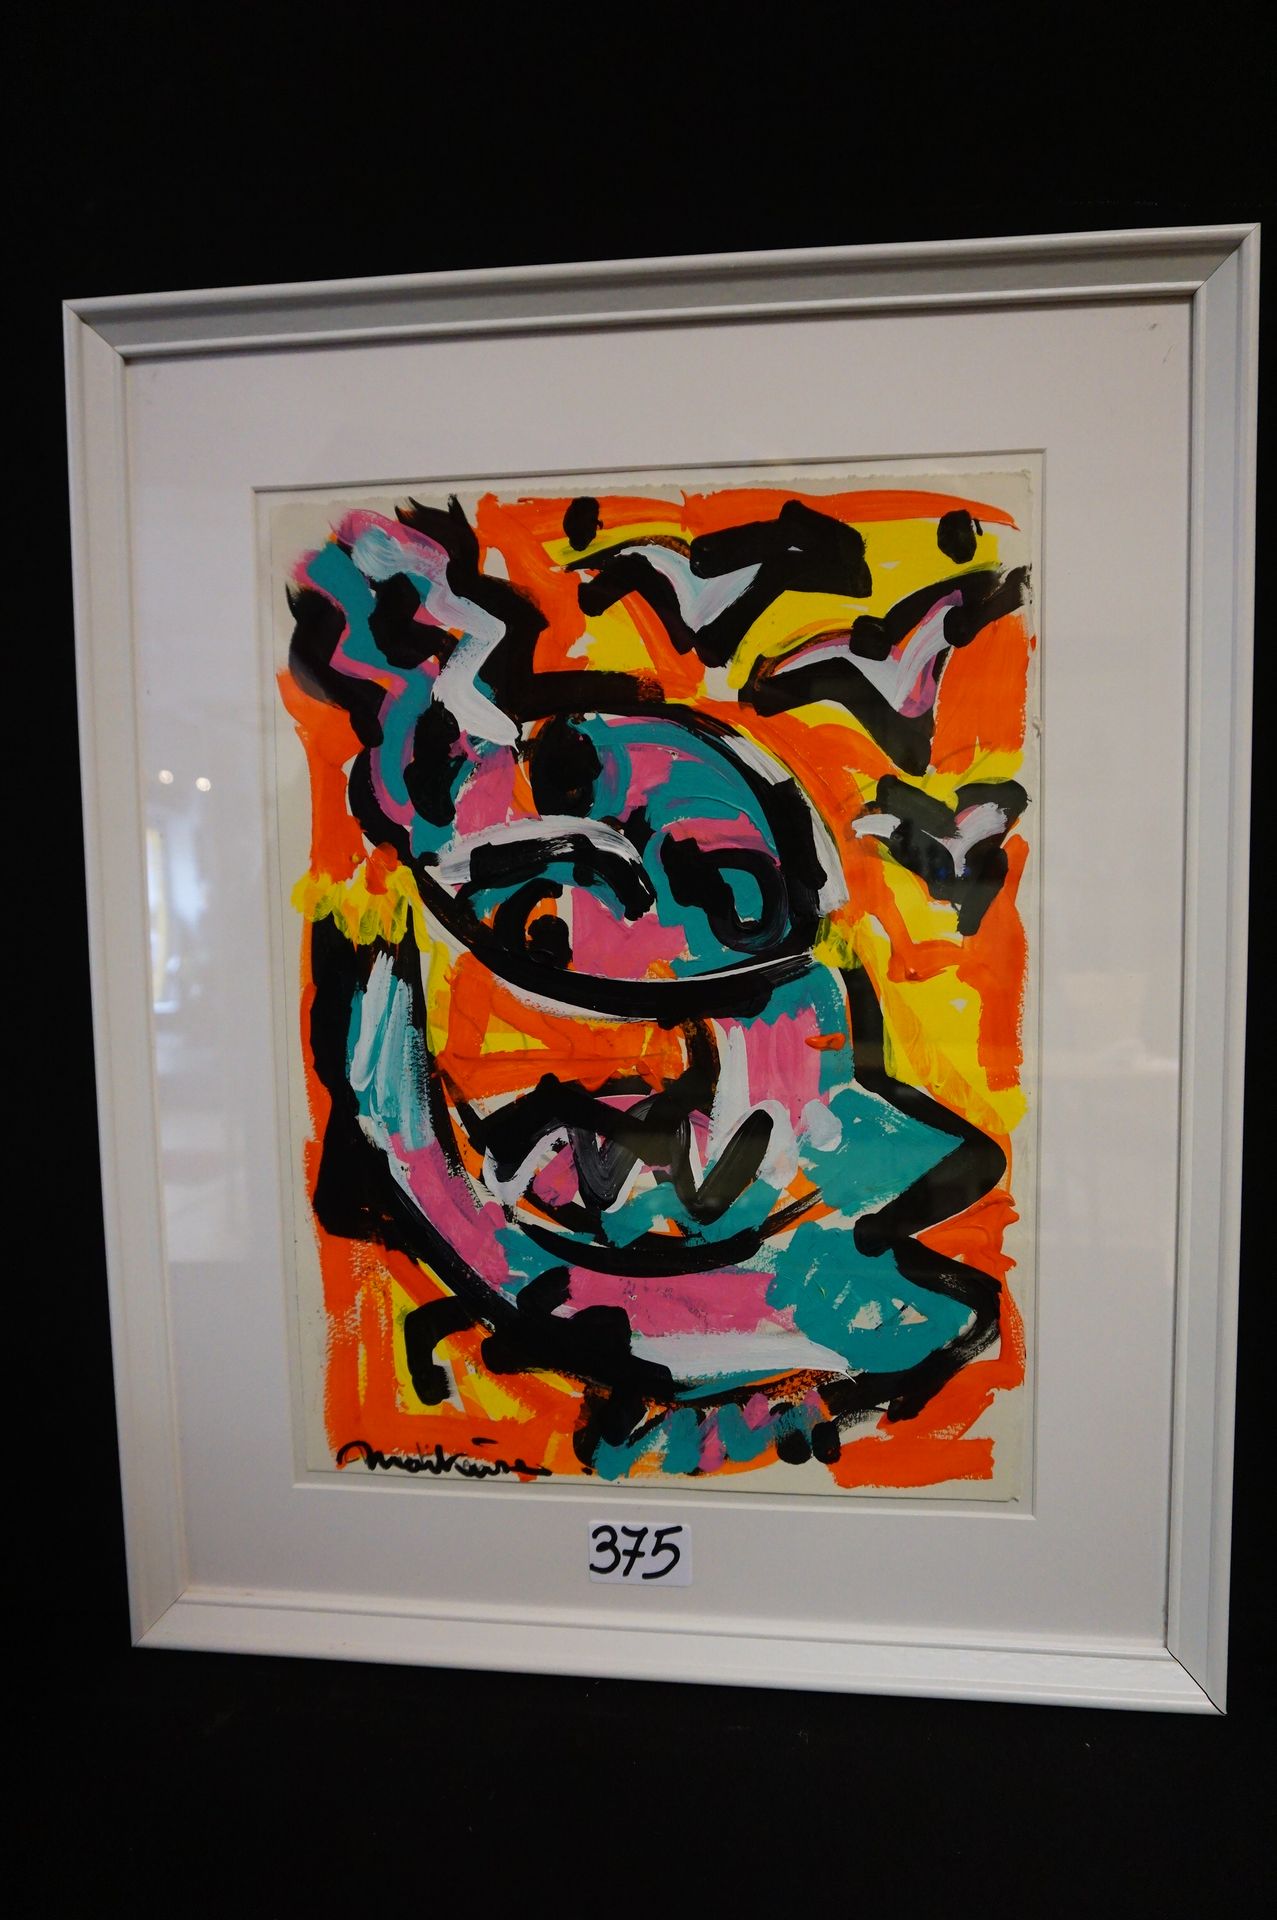 LUC MARTINSEN (1951 - ) "Composition moderne" - Acrylique - Signé - 37 x 27 cm